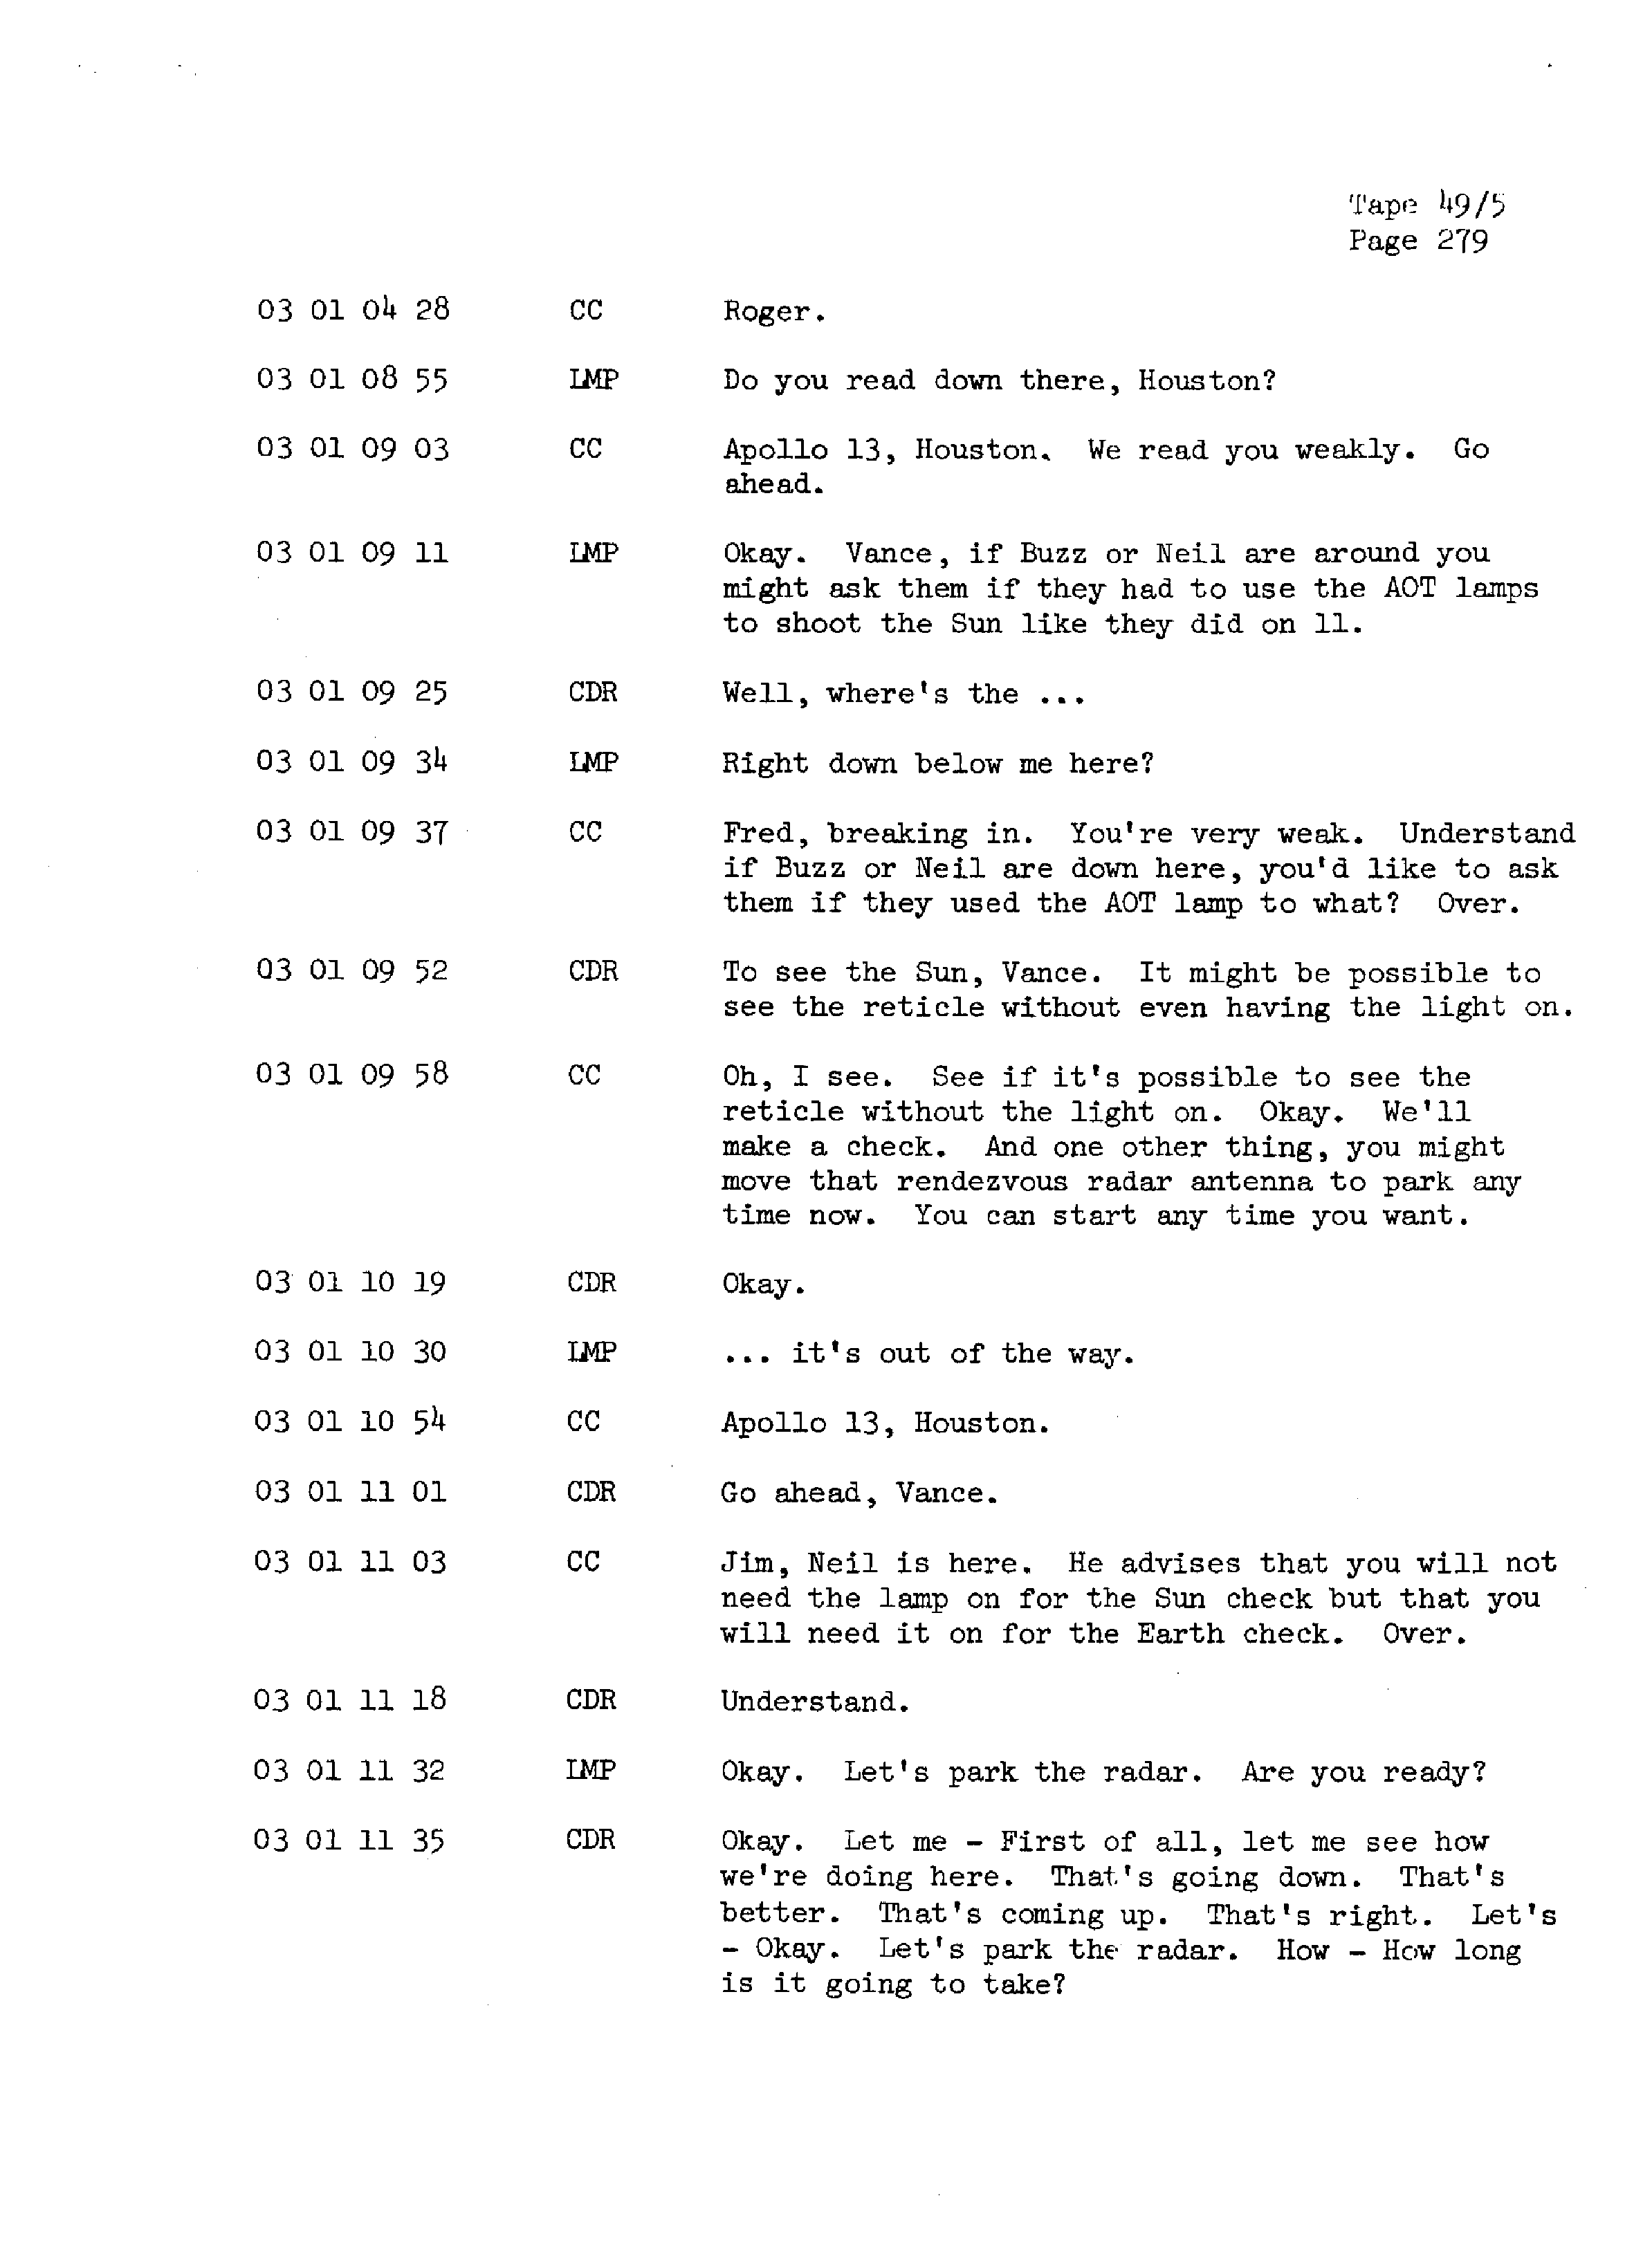 Page 286 of Apollo 13’s original transcript